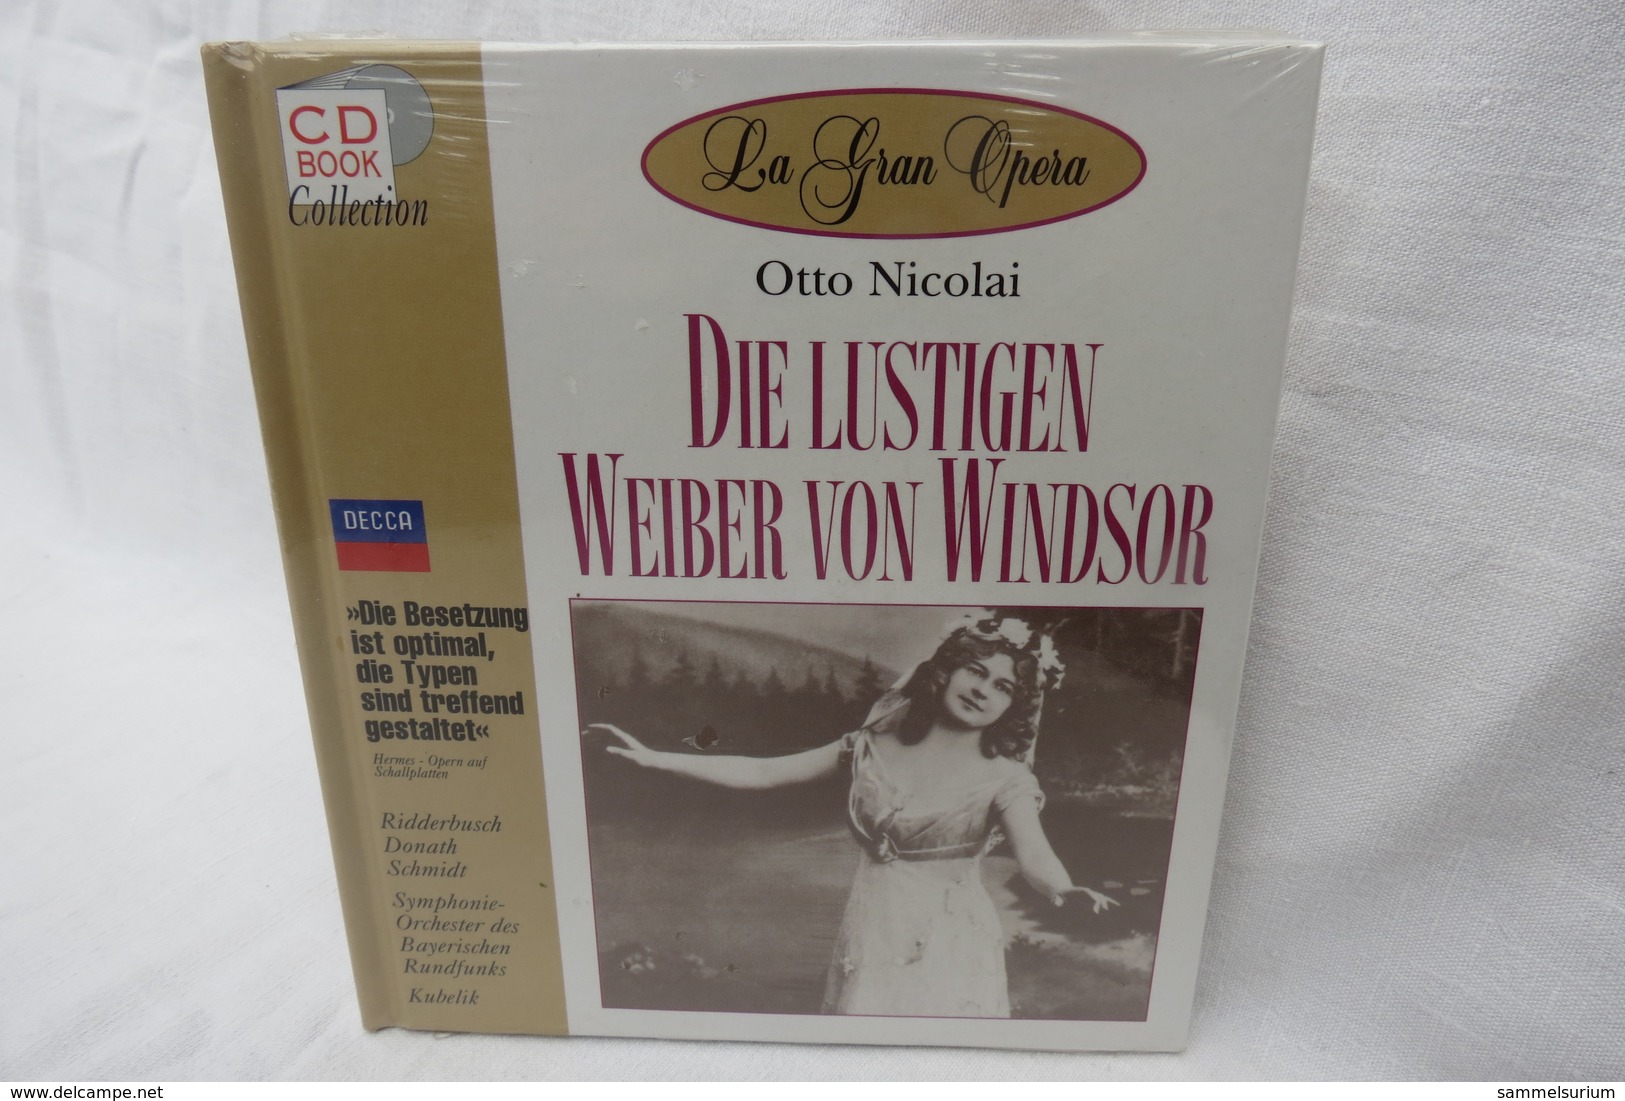 CD "Die Lustigen Weiber V.Windsor/Otto Nicolai" Mit Buch Aus Der CD Book Collection (ungeöffnet, Original Eingeschweißt) - Opera / Operette